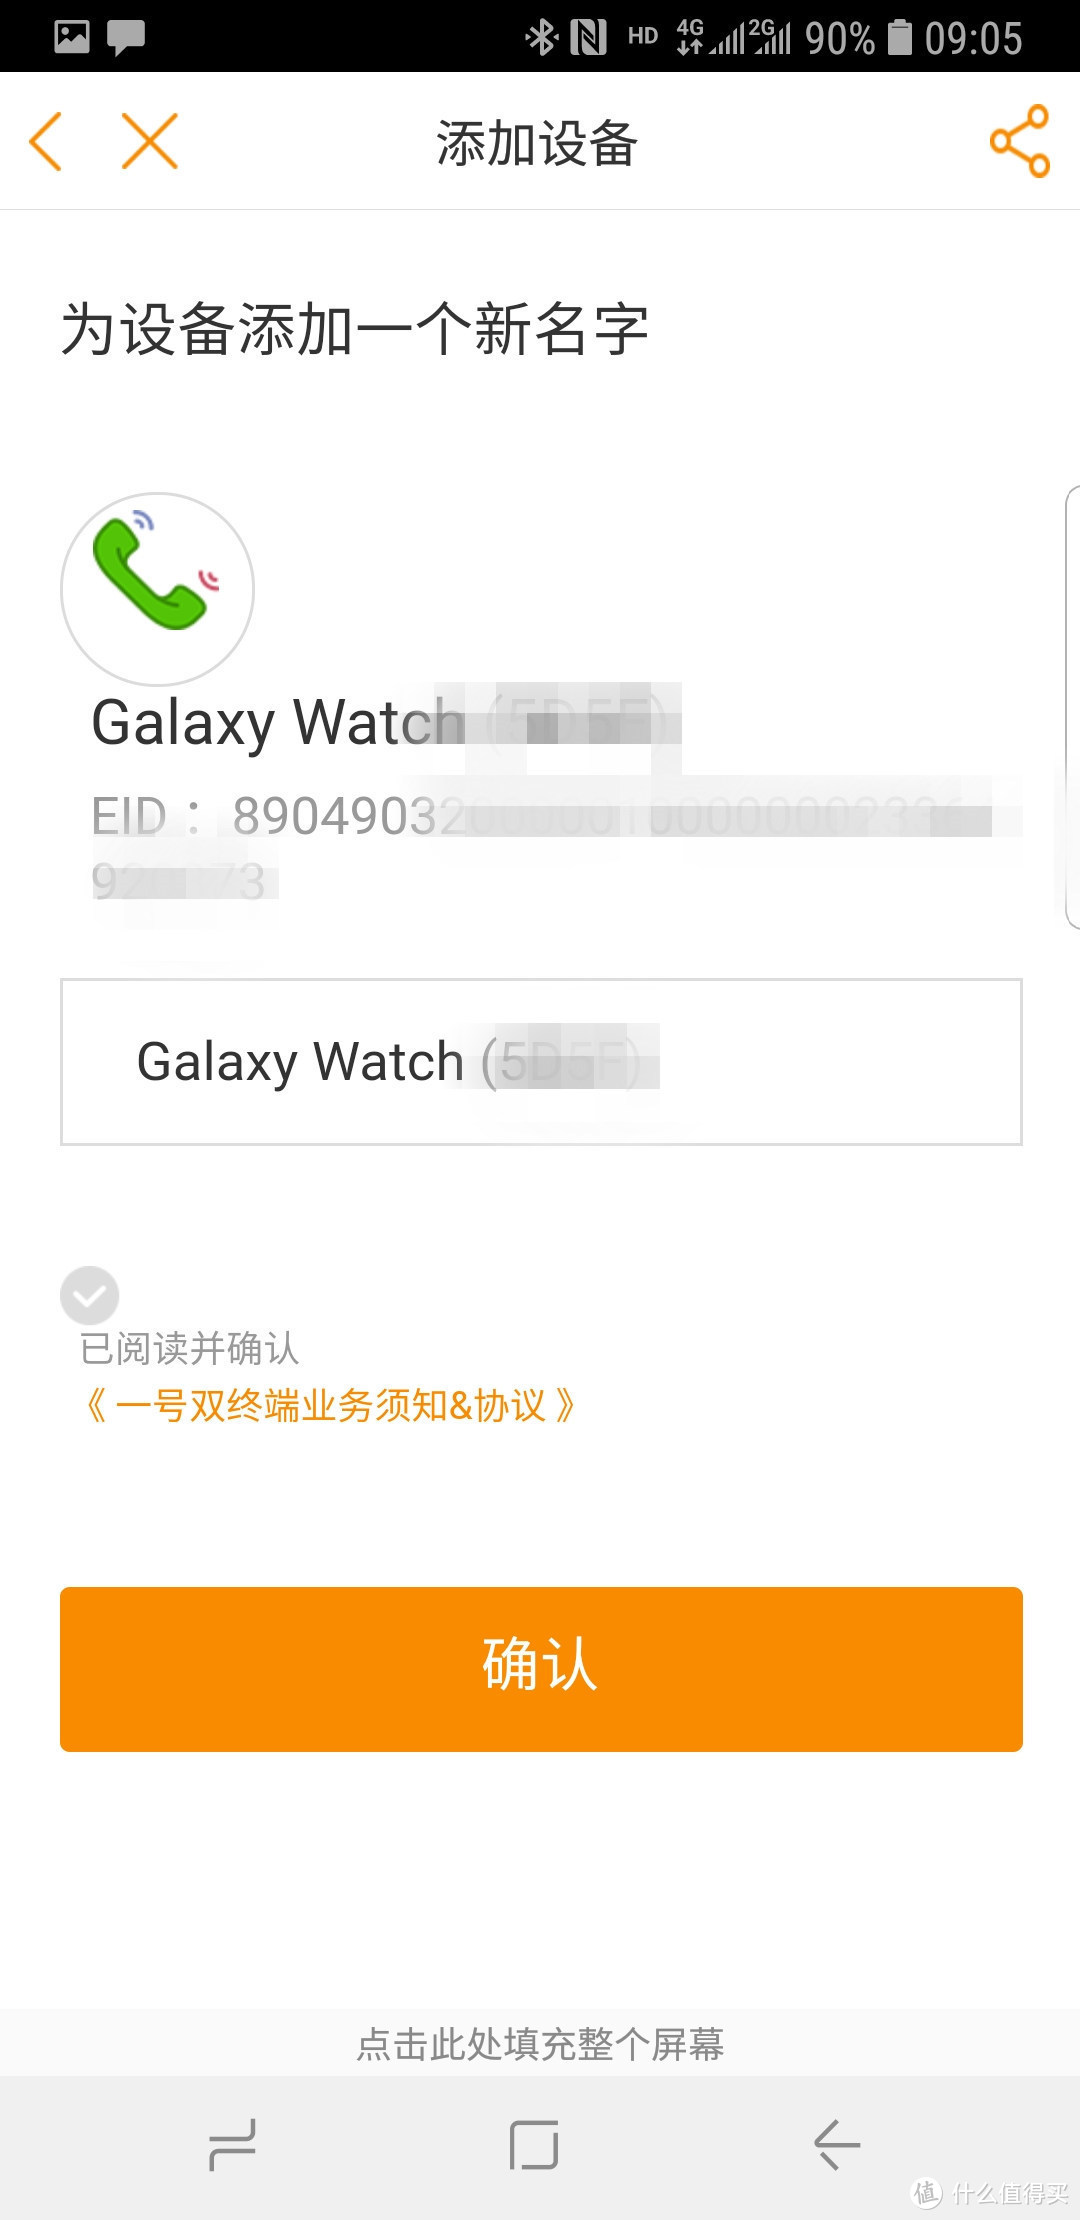 购买的三星galaxy watch LTE手表